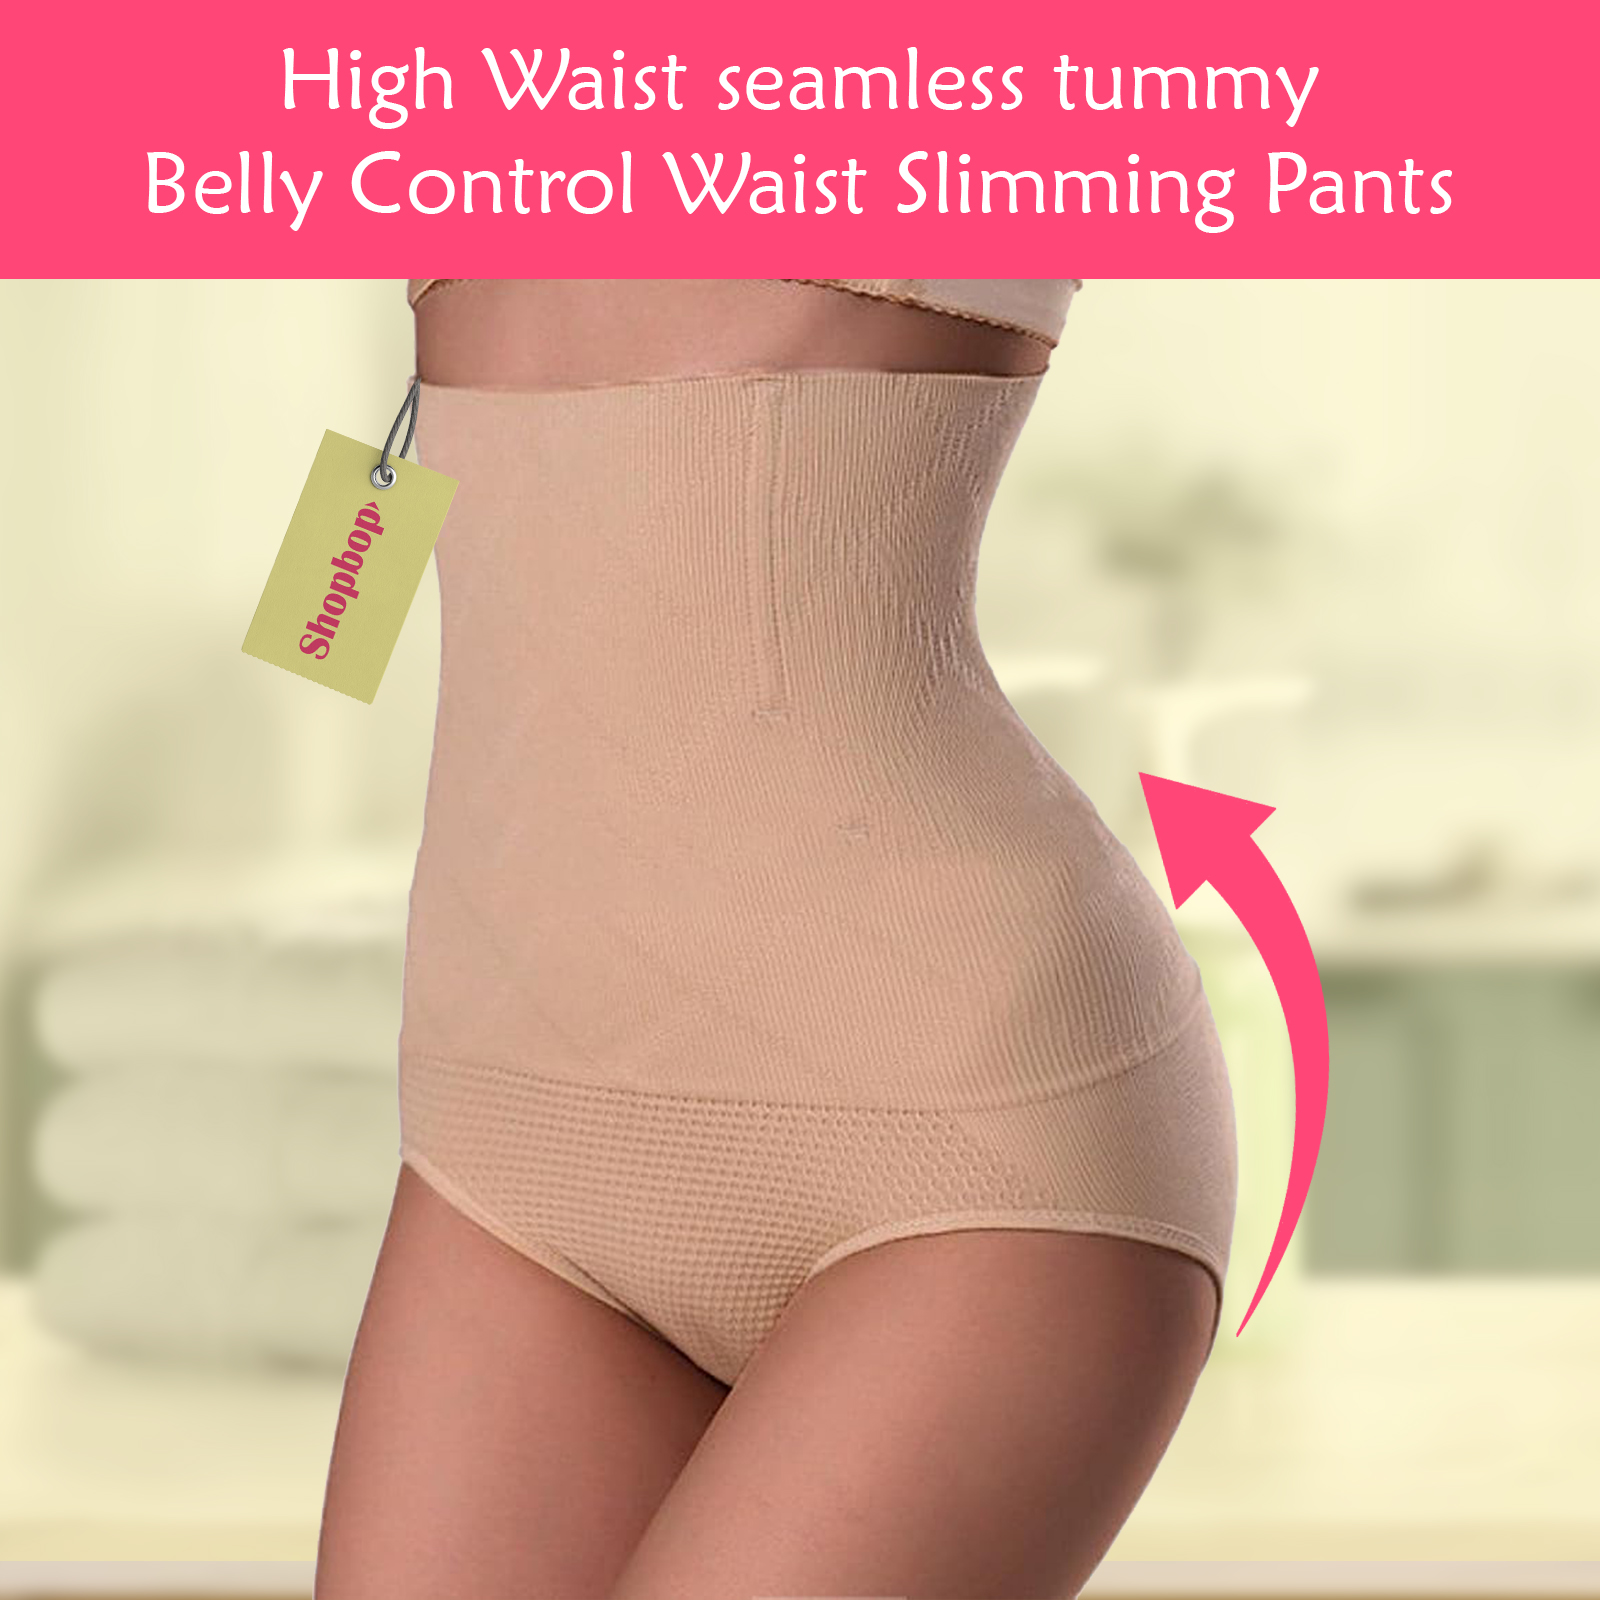 SHOPBOP Women Body Shaper Panties High Waist seamless tummy Belly